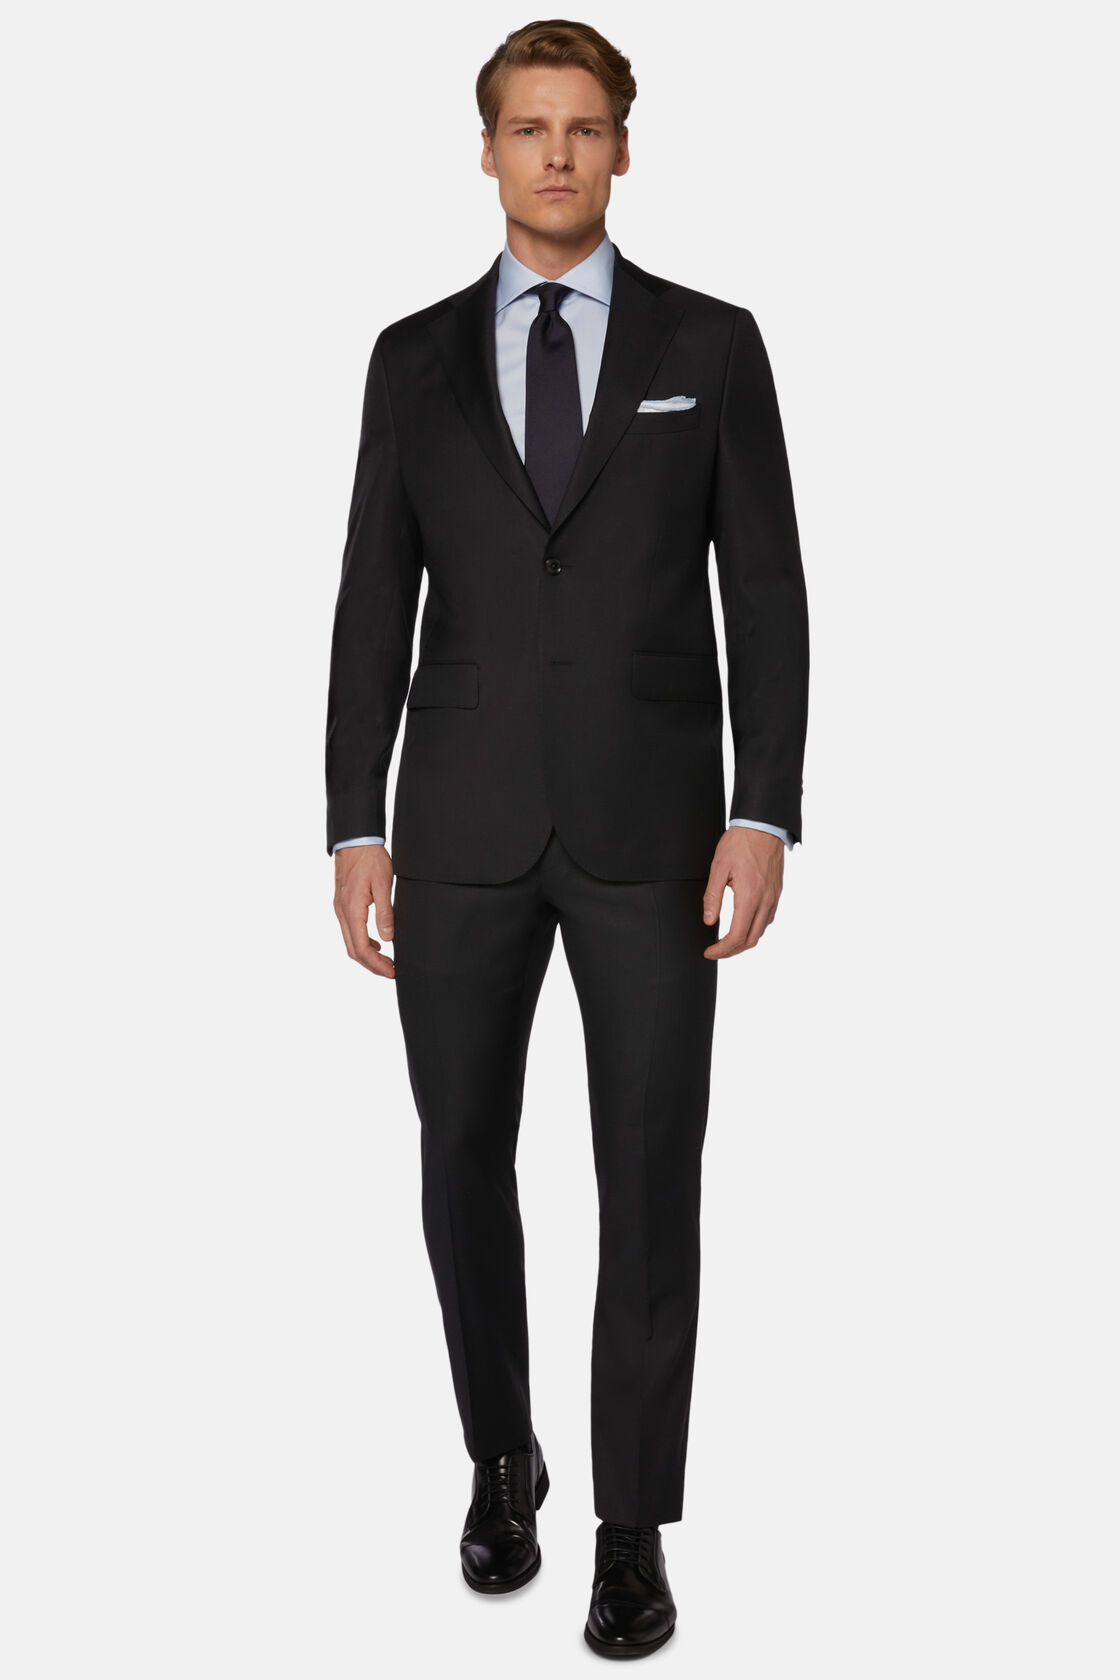 Men's Charcoal Grey Suit in Super 130 Wool